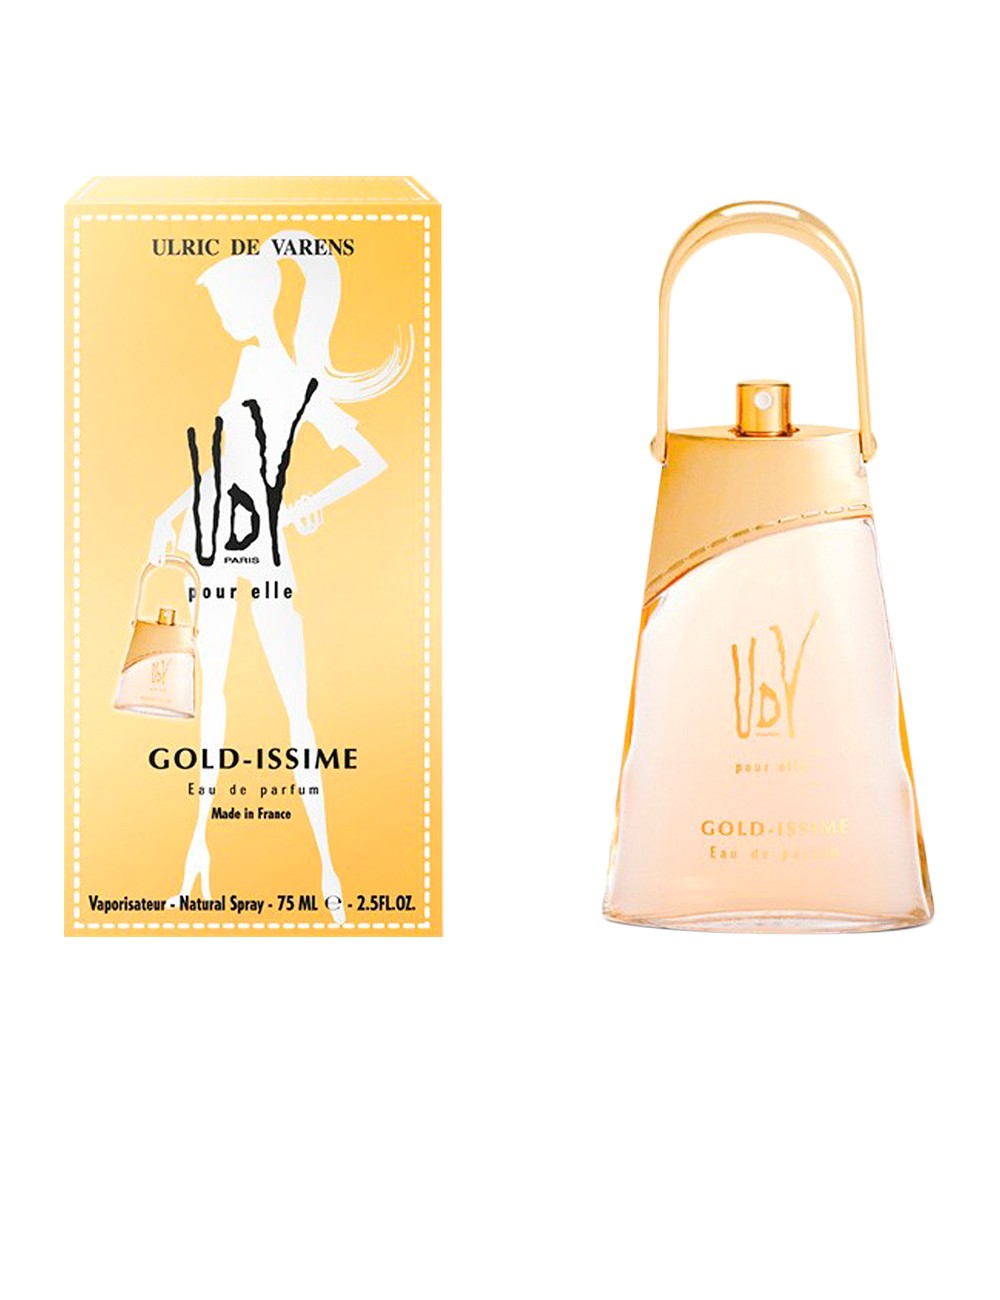 GOLD-ISSIME eau de parfum vaporisateur 75 ml